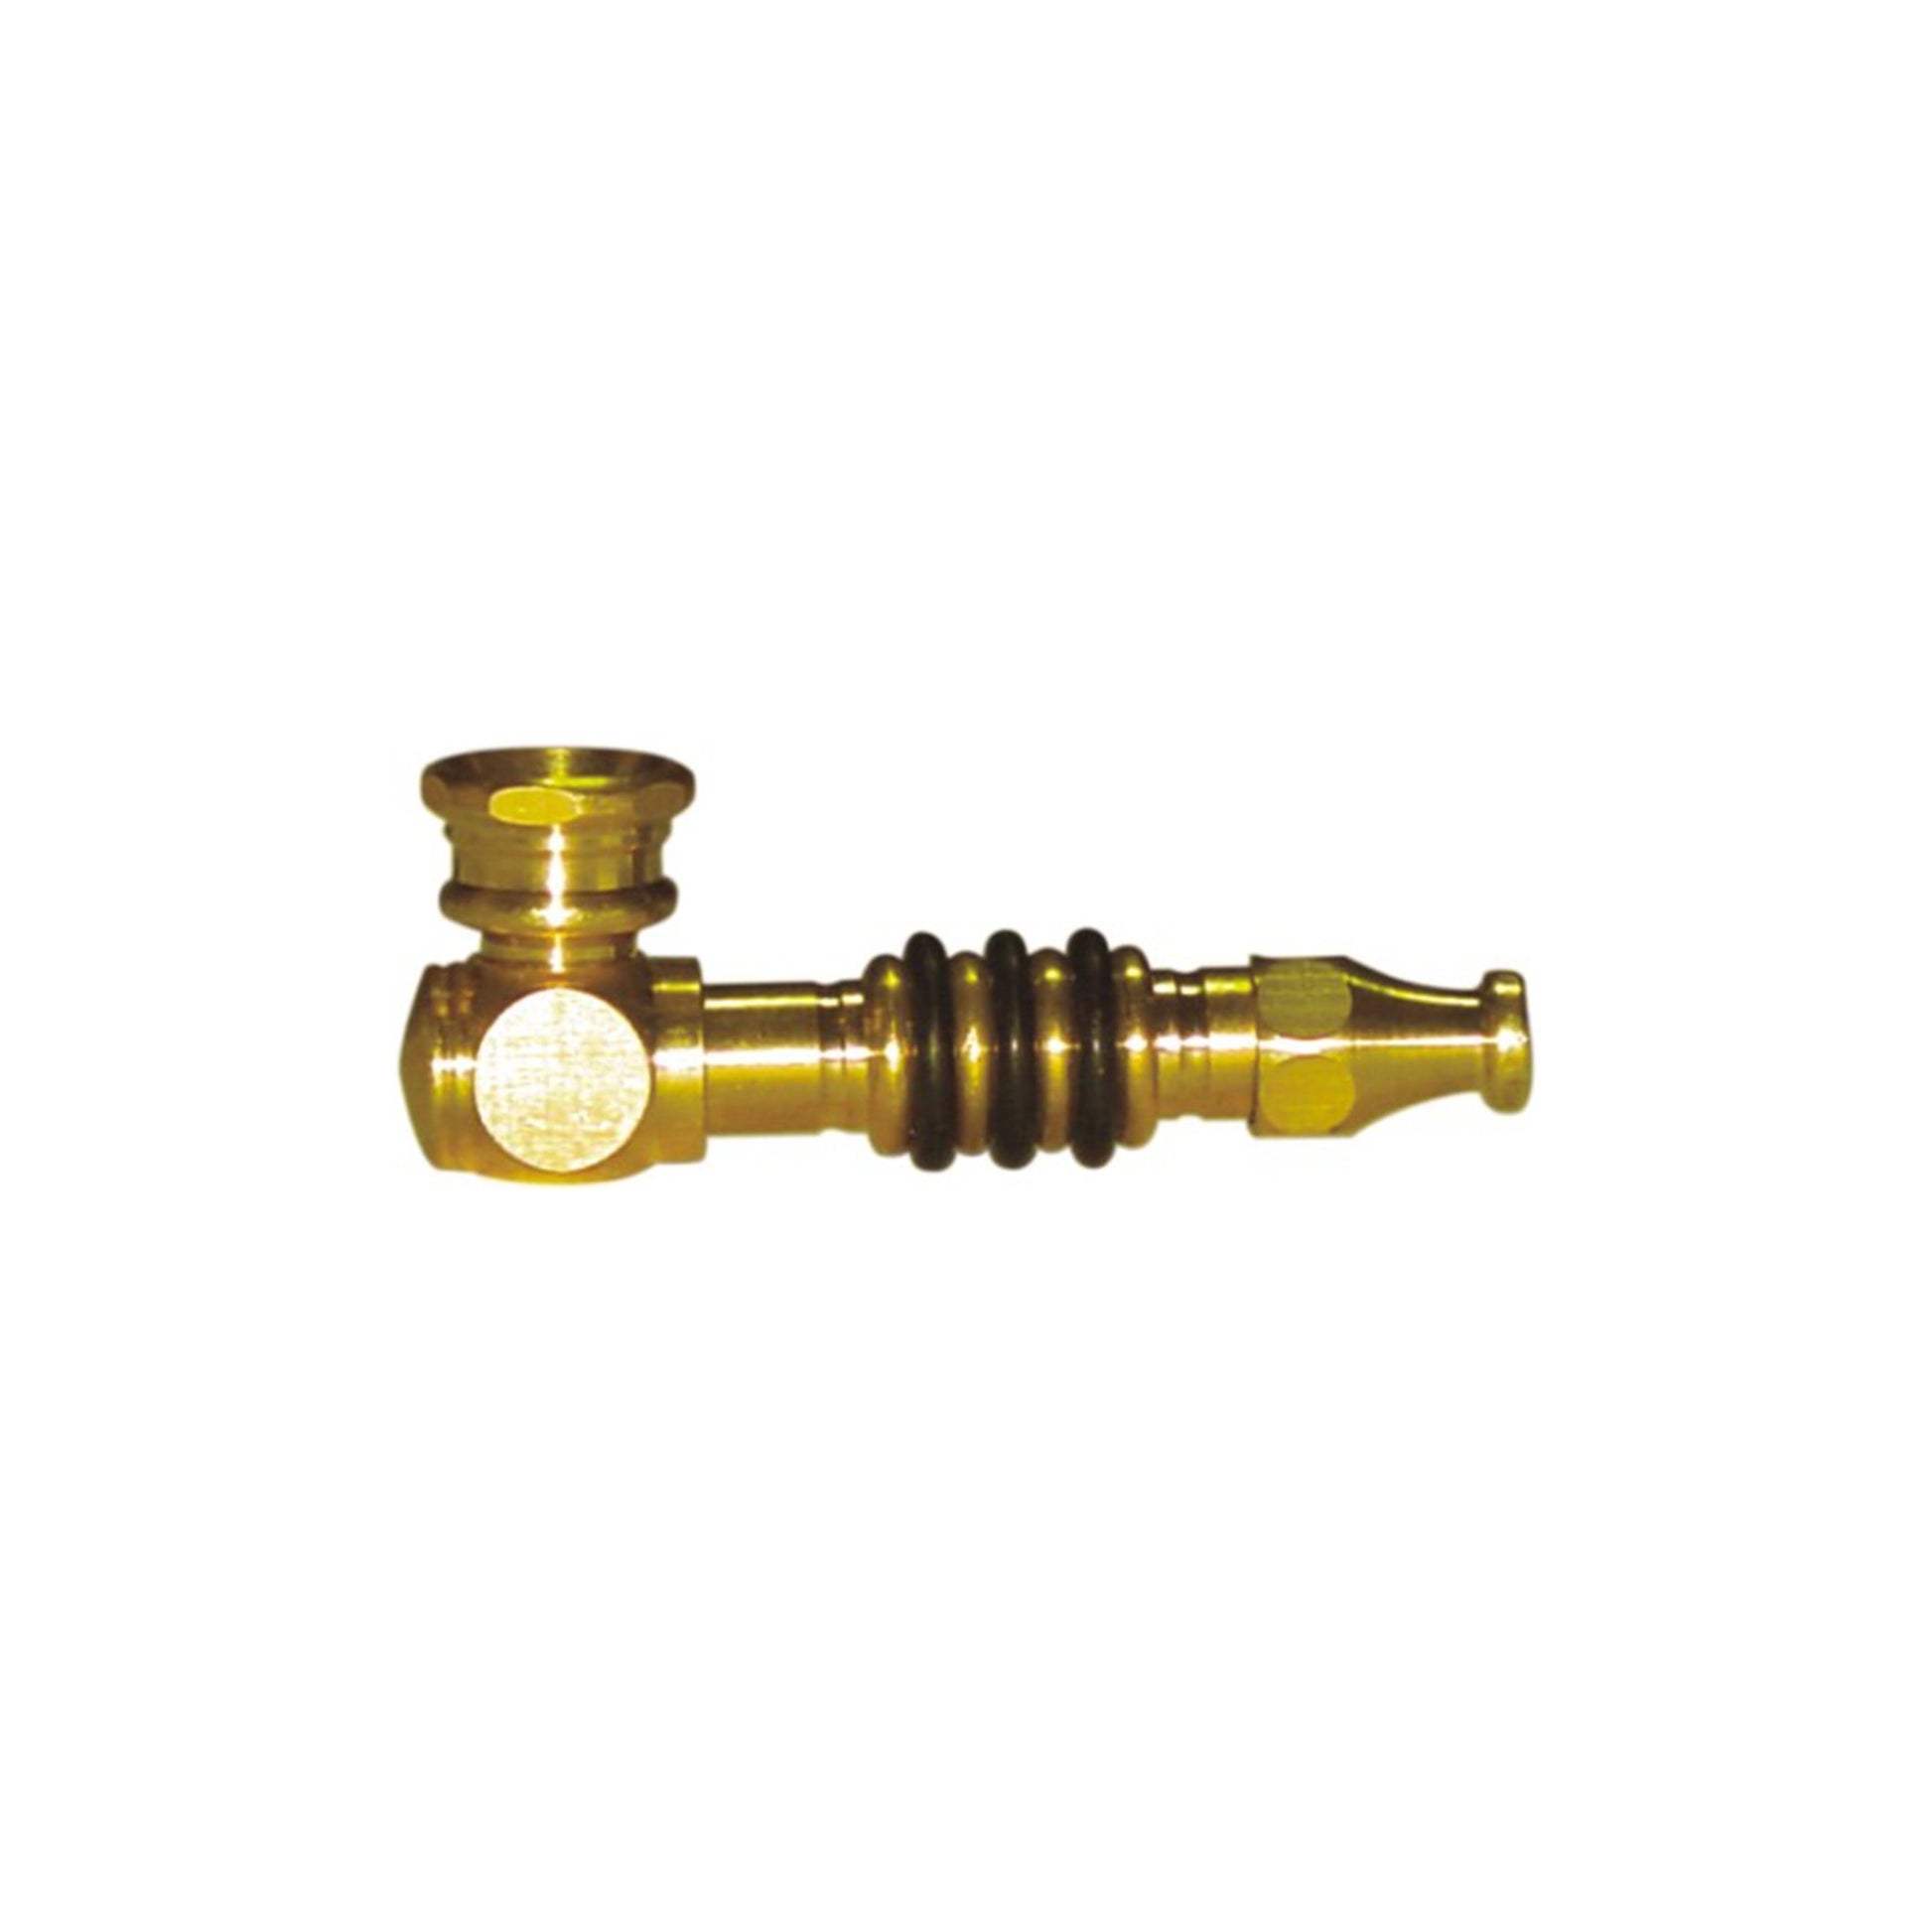 Pipe Brass (7cm) - Dry Pipe - BongsMart Australia